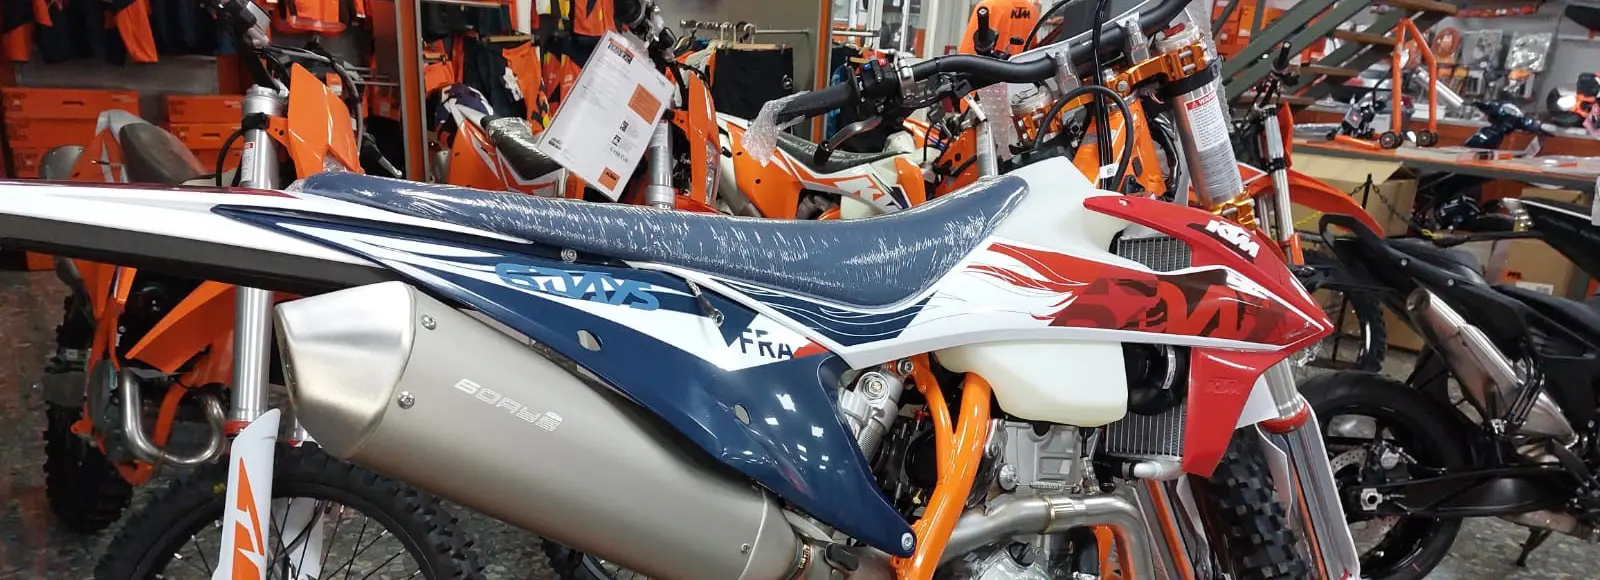 tienda de motos en huelva - Qué es el motoshop